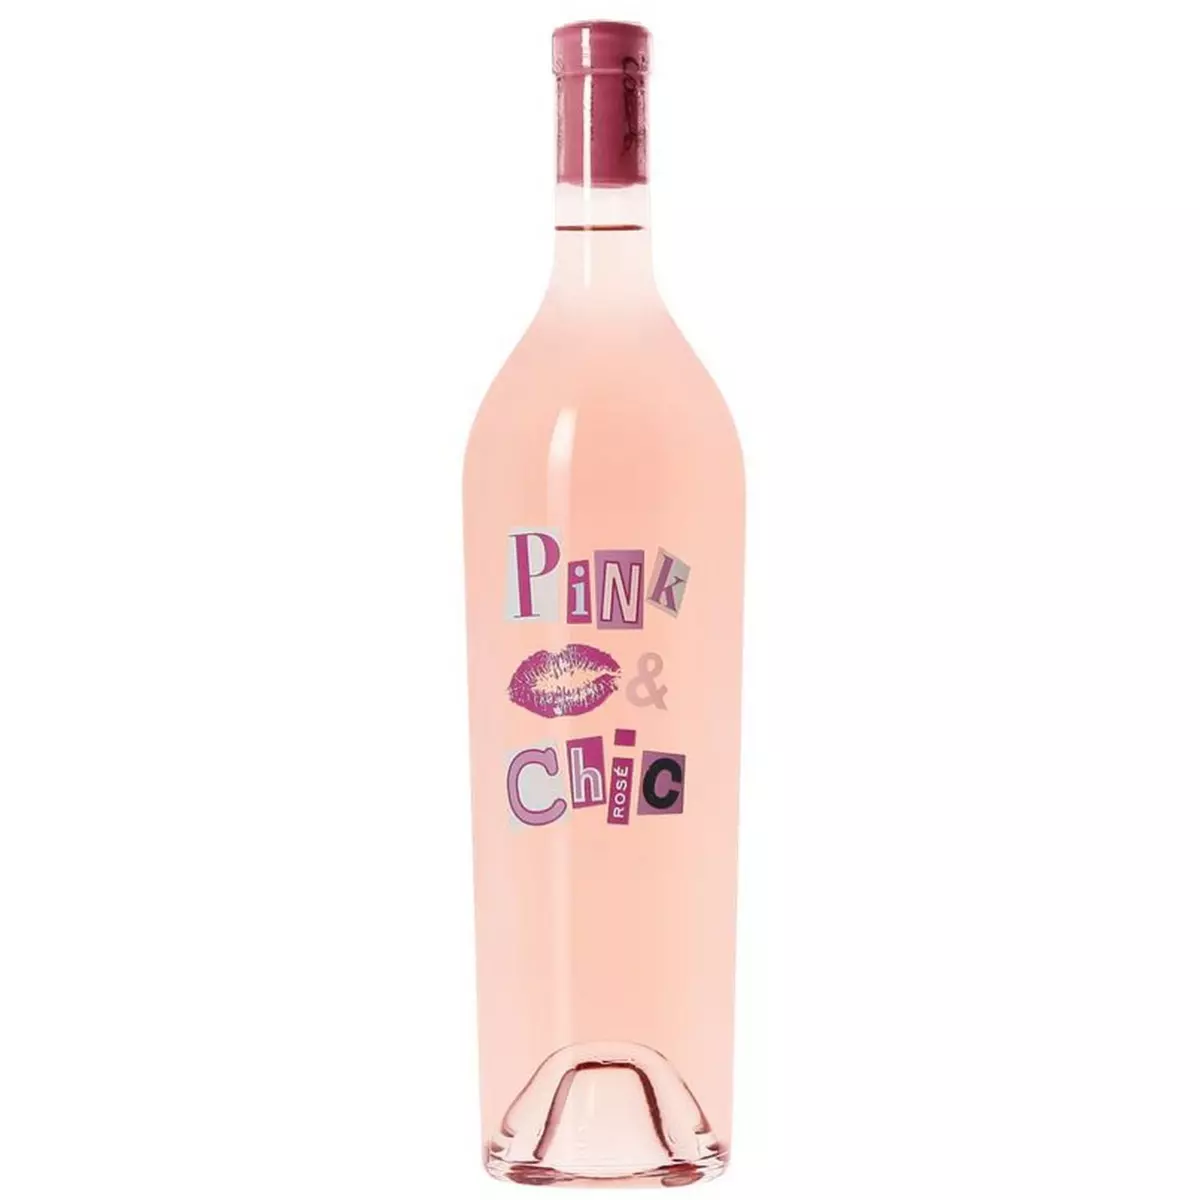 IGP Pays de Bessan Pink & Chic rosé 75cl